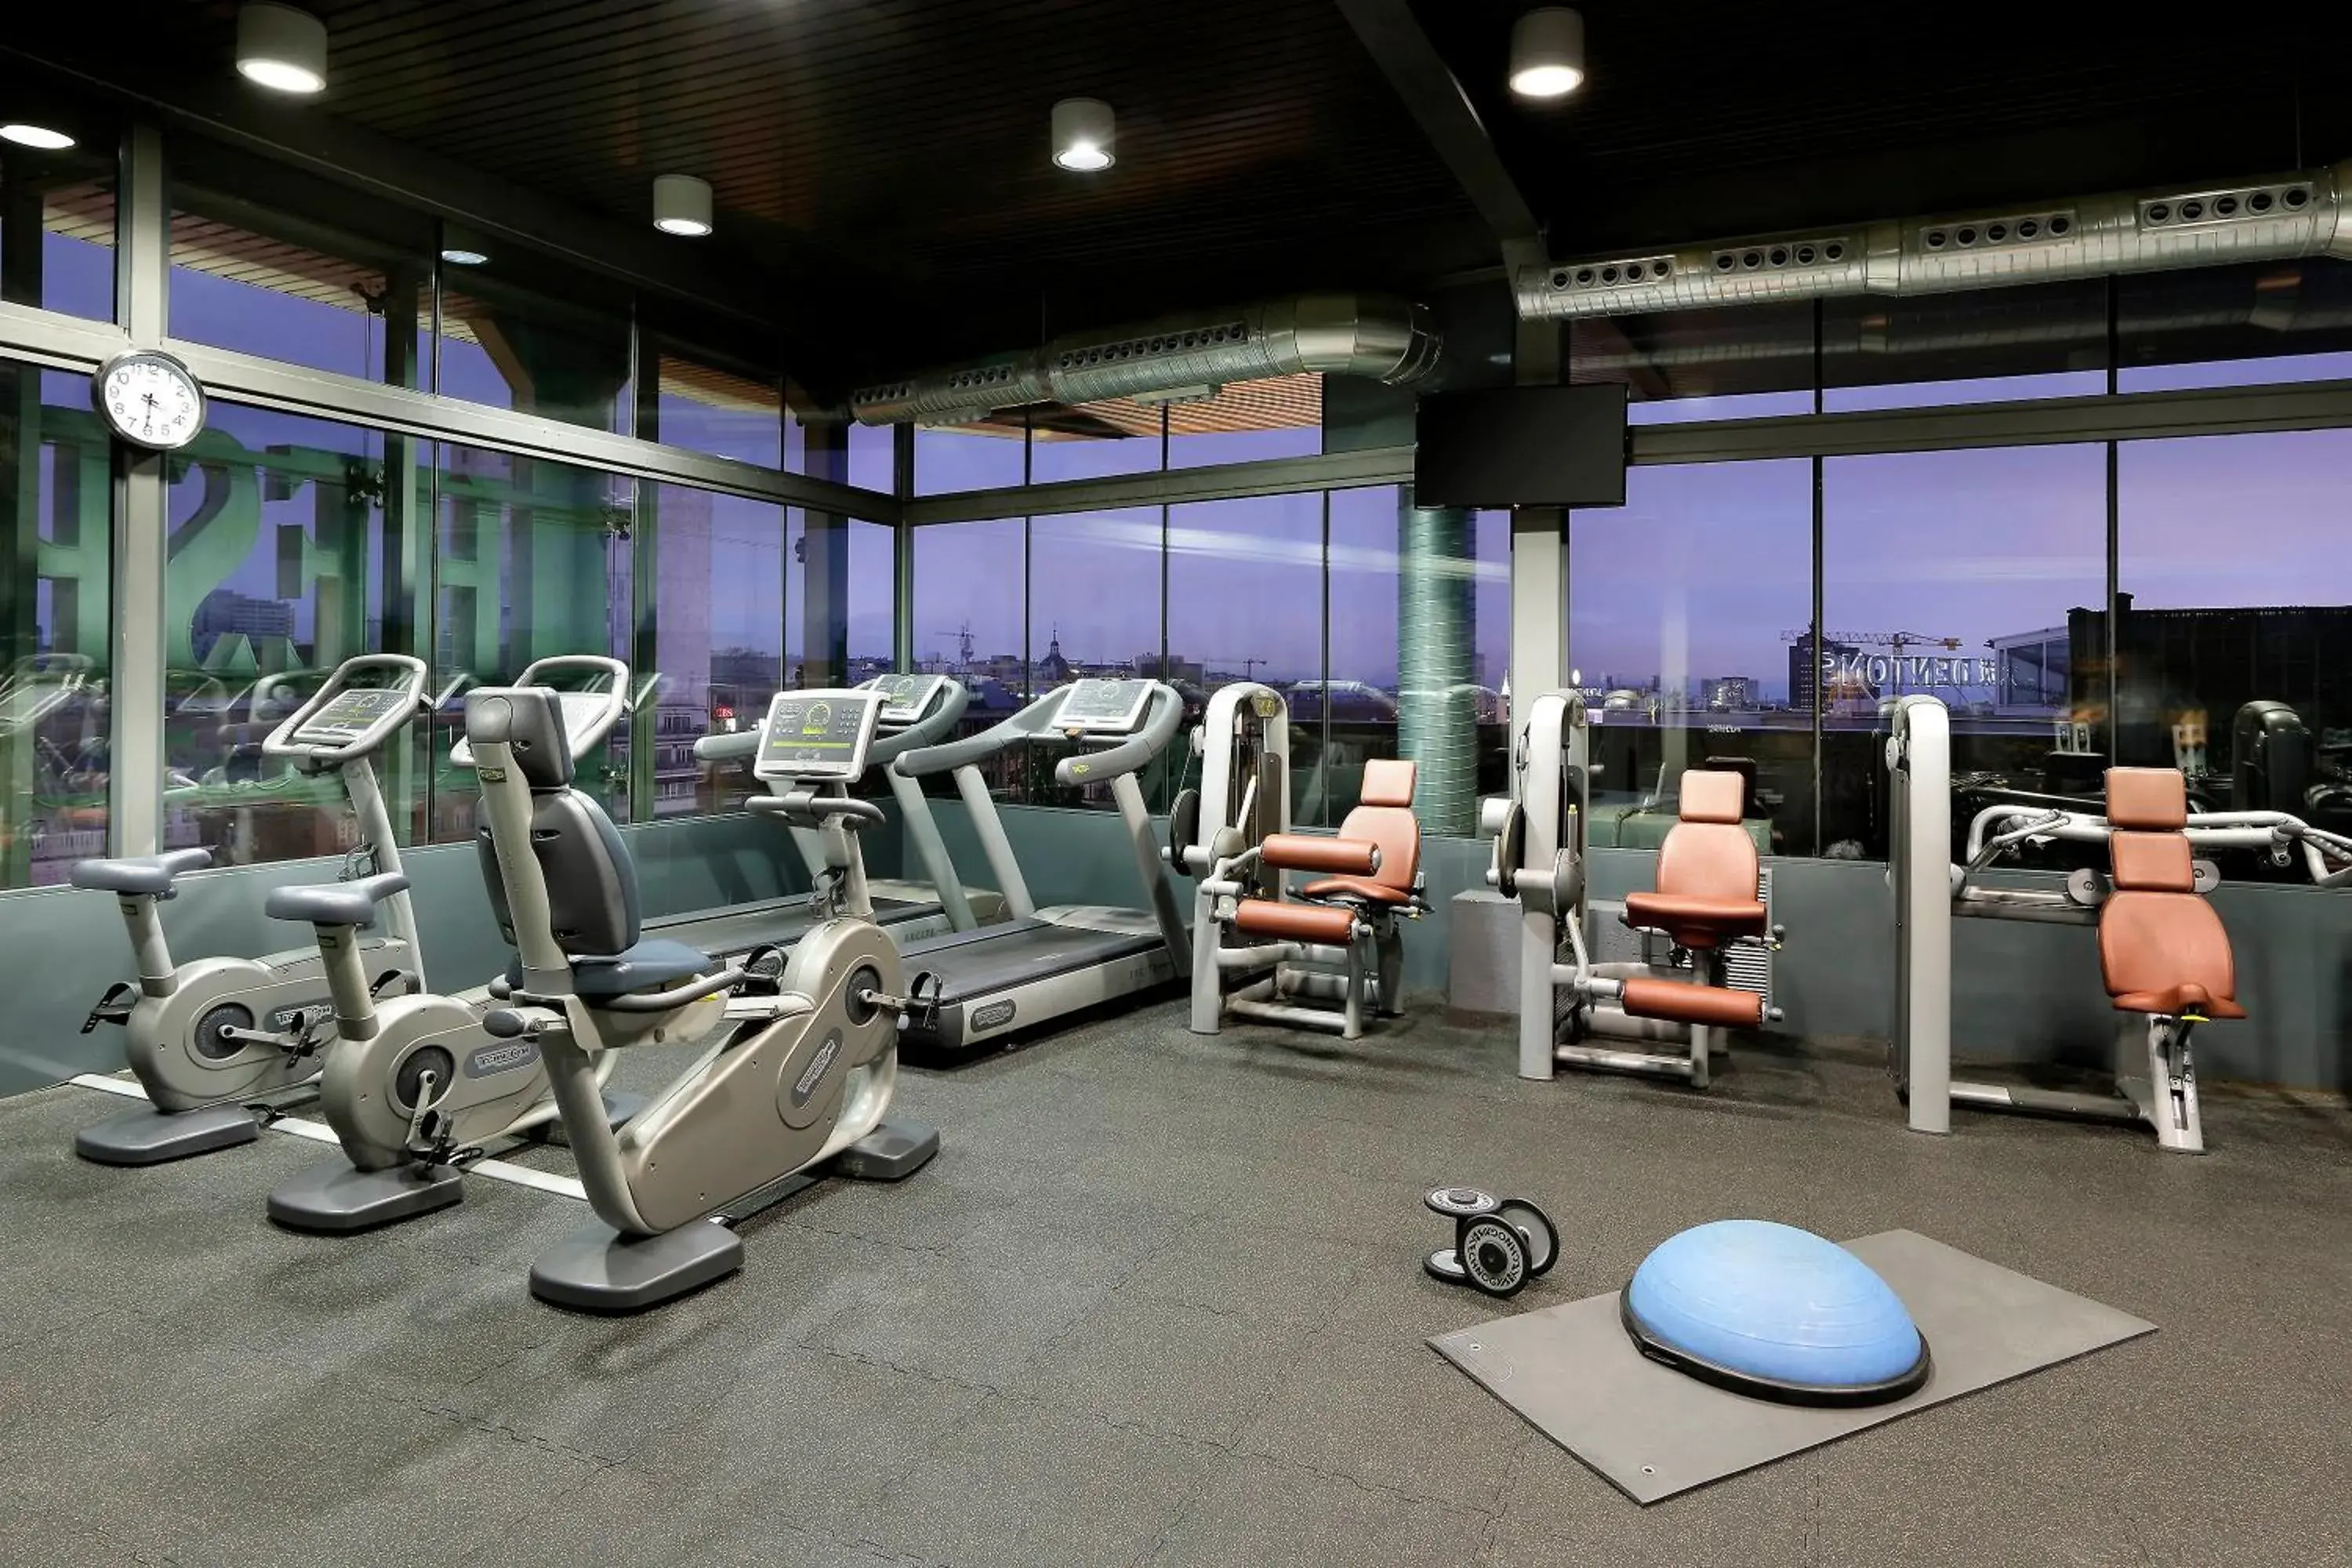 Fitness centre/facilities, Fitness Center/Facilities in Hyatt Regency Hesperia Madrid